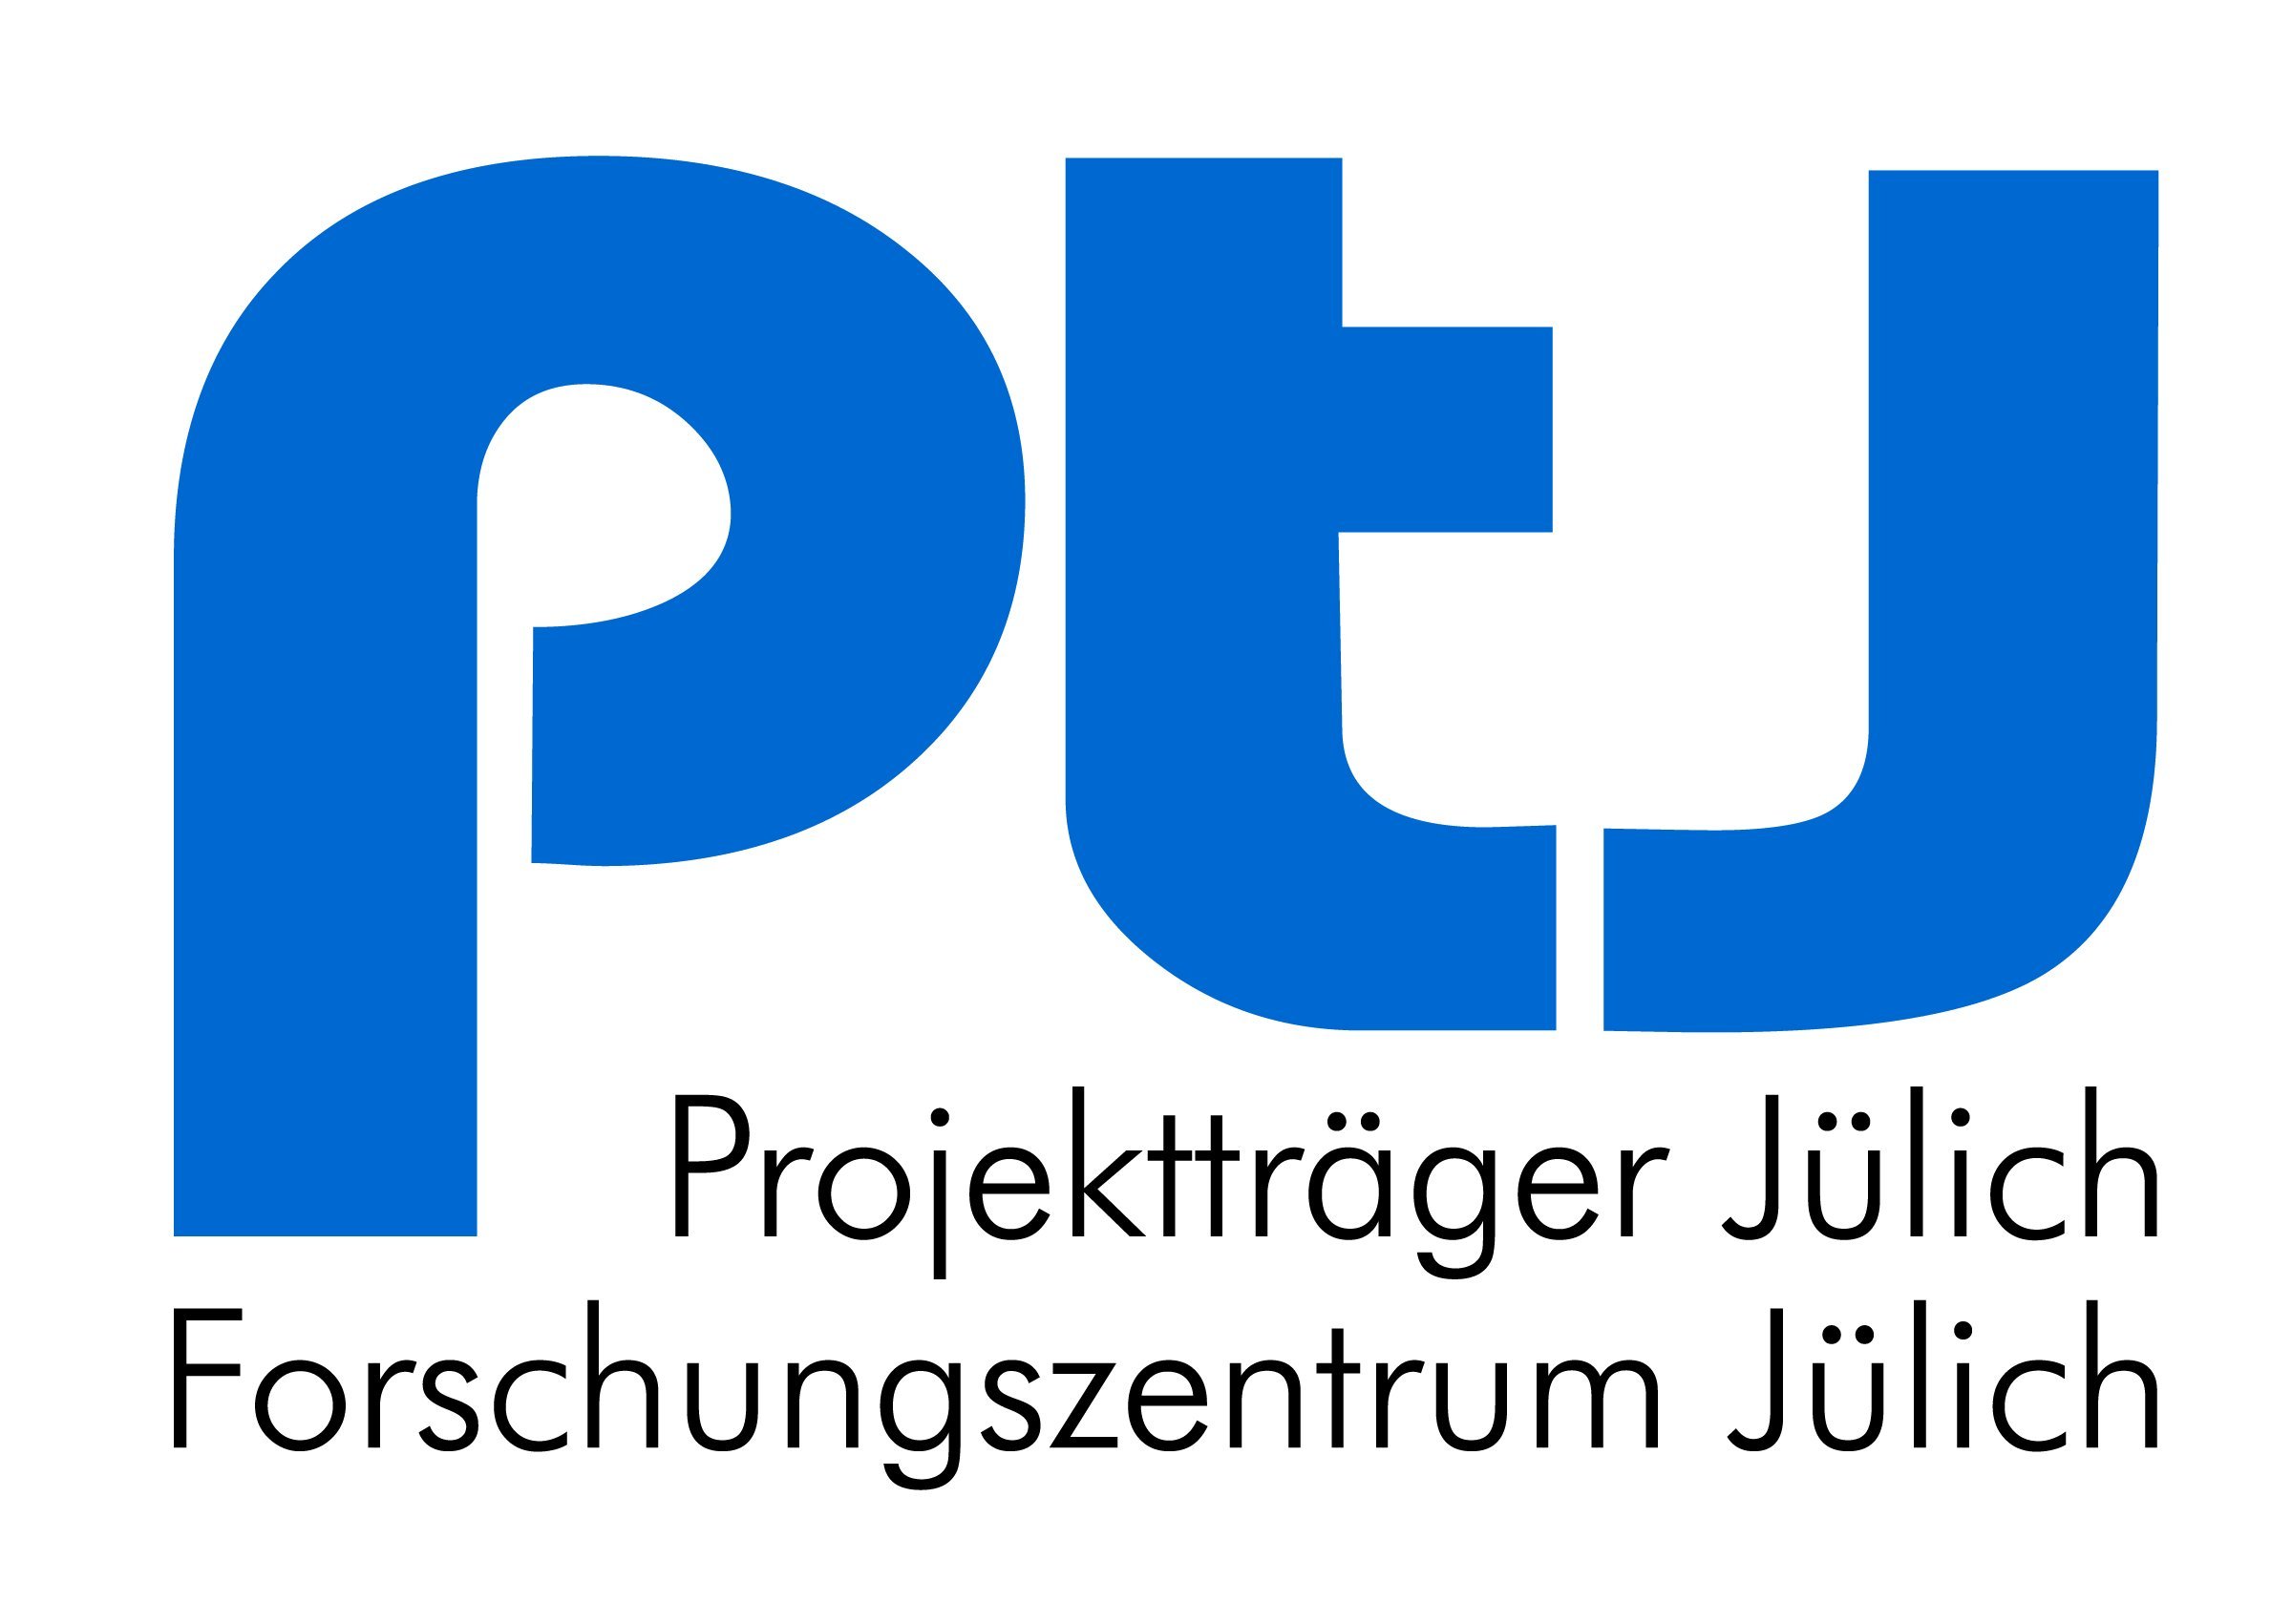  Logo mit Link zur Homepage ptj - Öffnet externen Link im neuen Fenster 